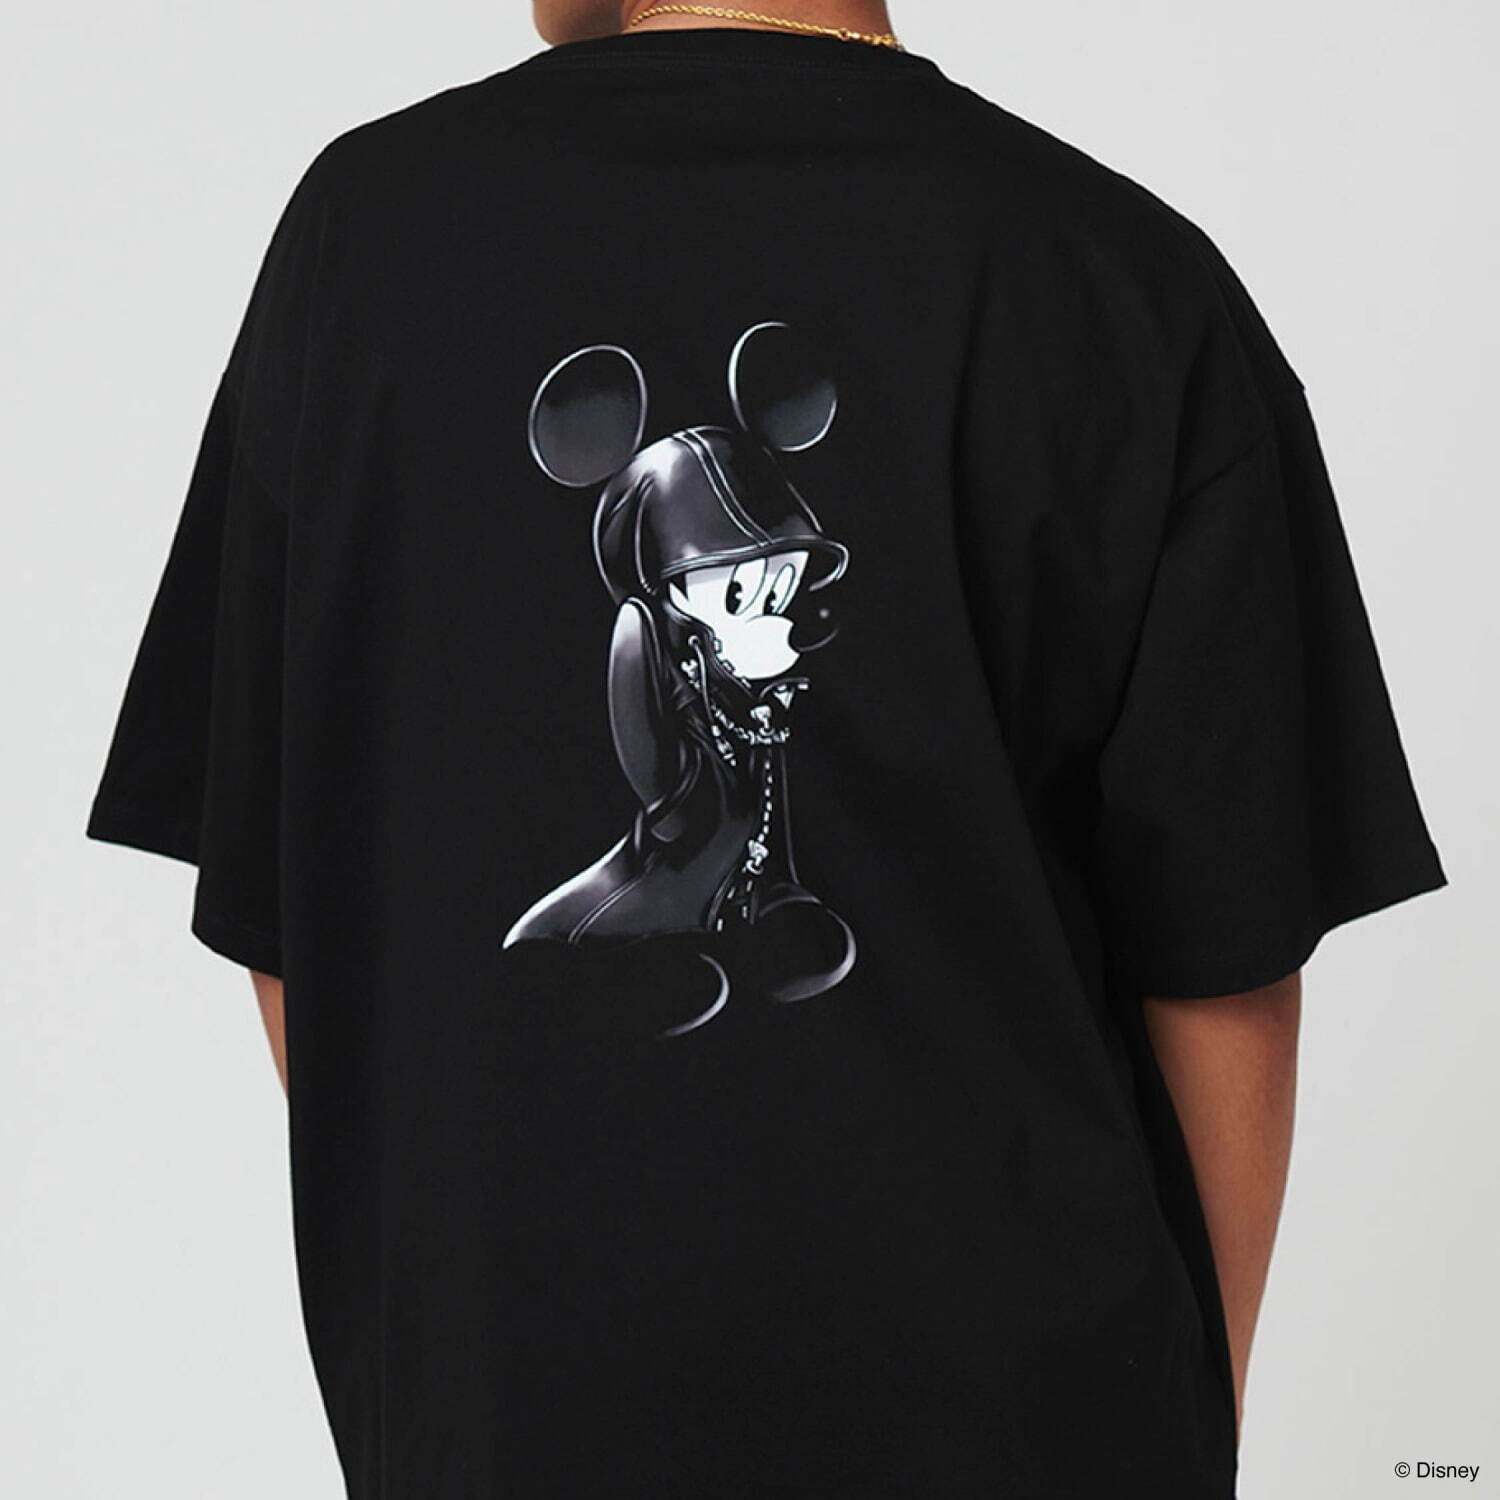 ビッグシルエットTシャツ「王様(ミッキーマウス)」4,500円